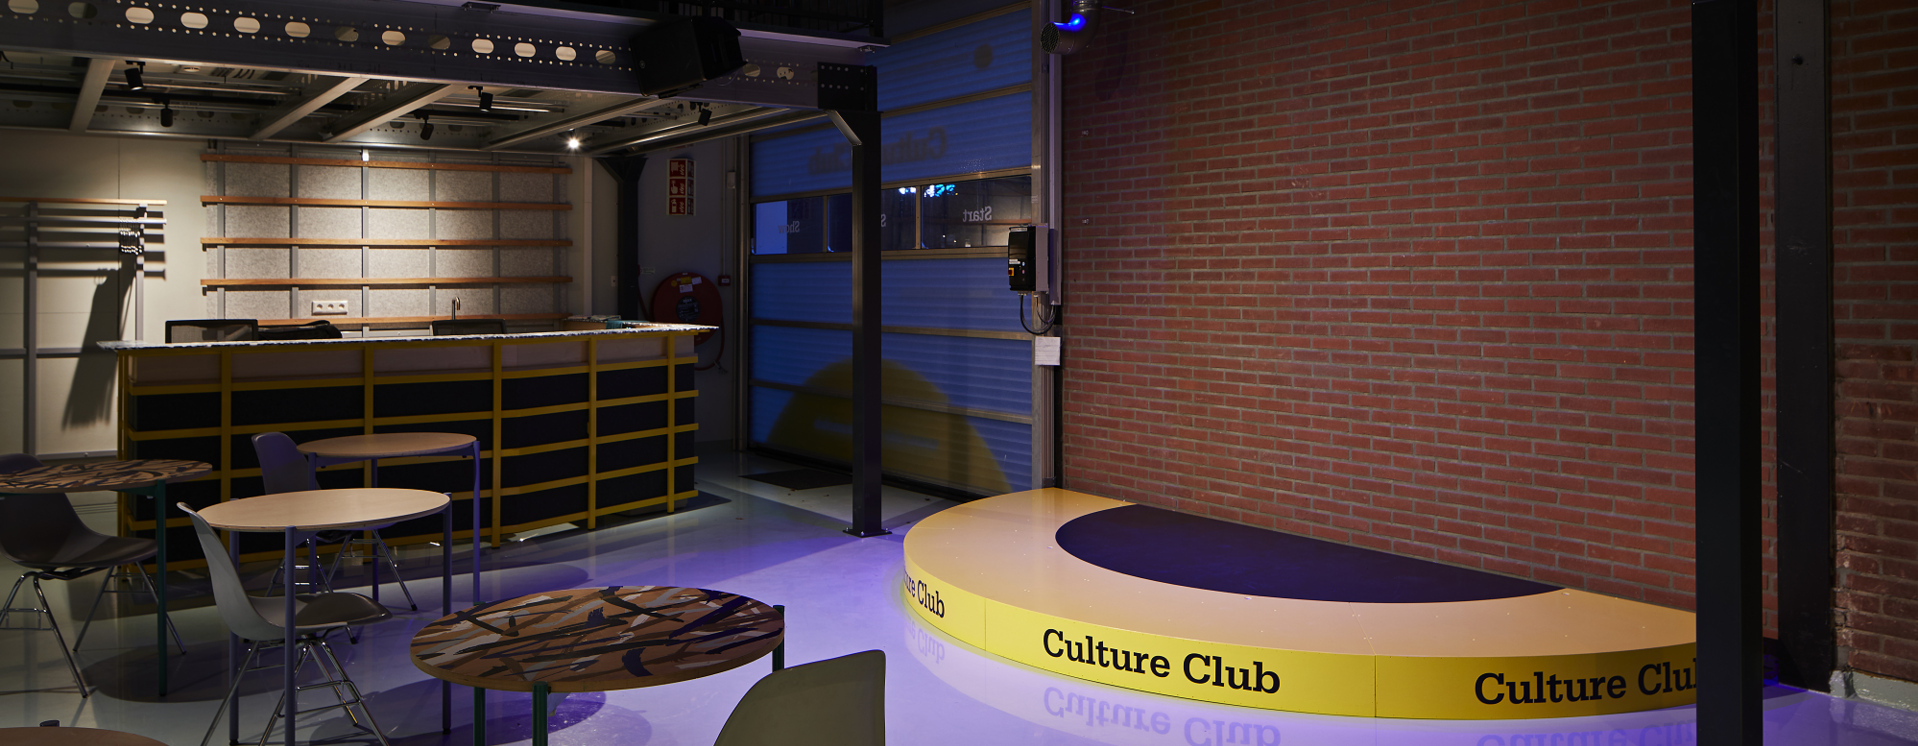  Culture-Club.png